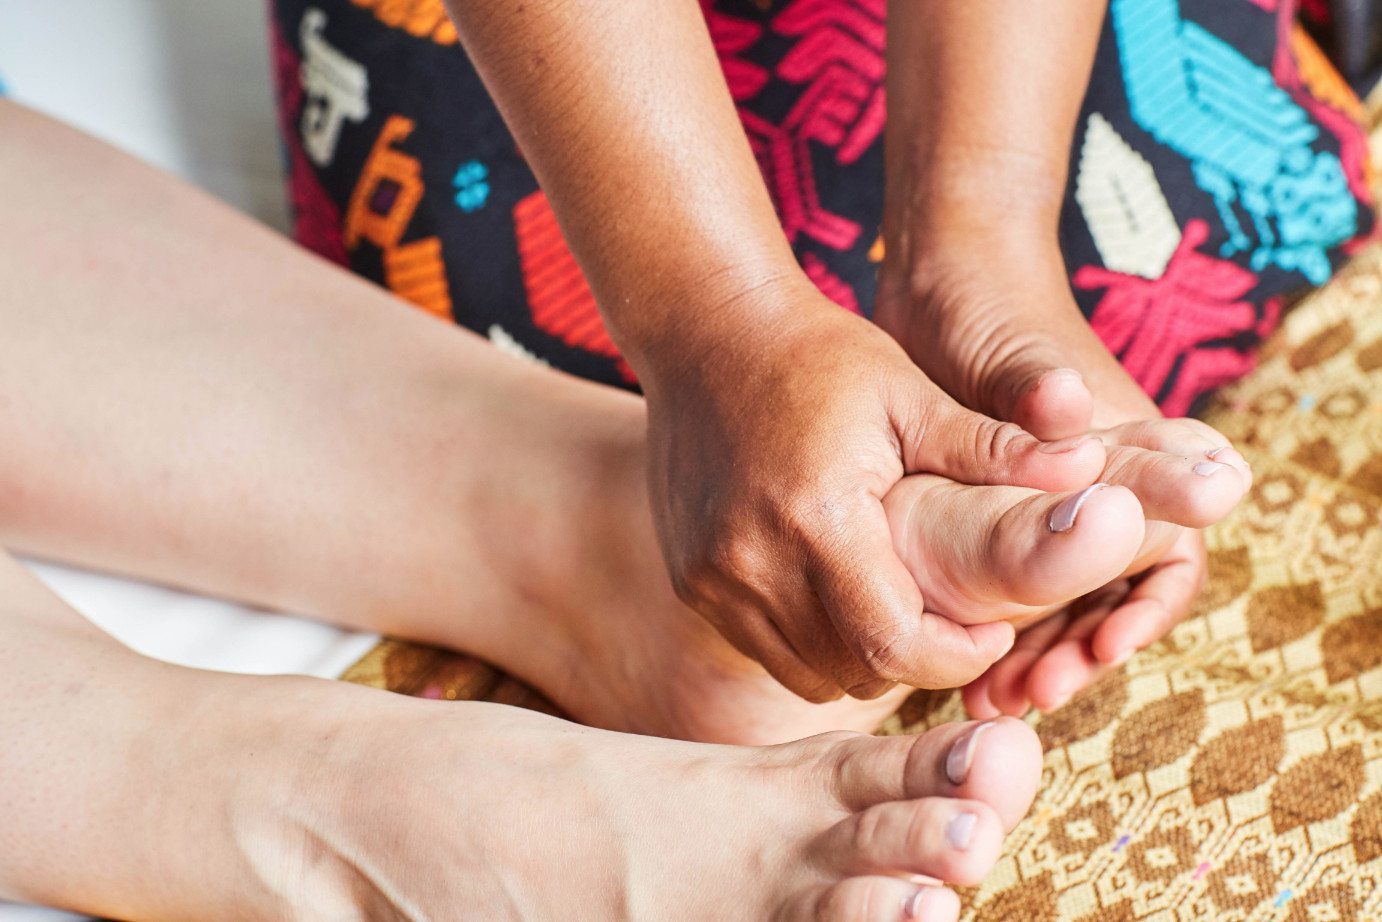 Foot reflexology massage at Bali retreat